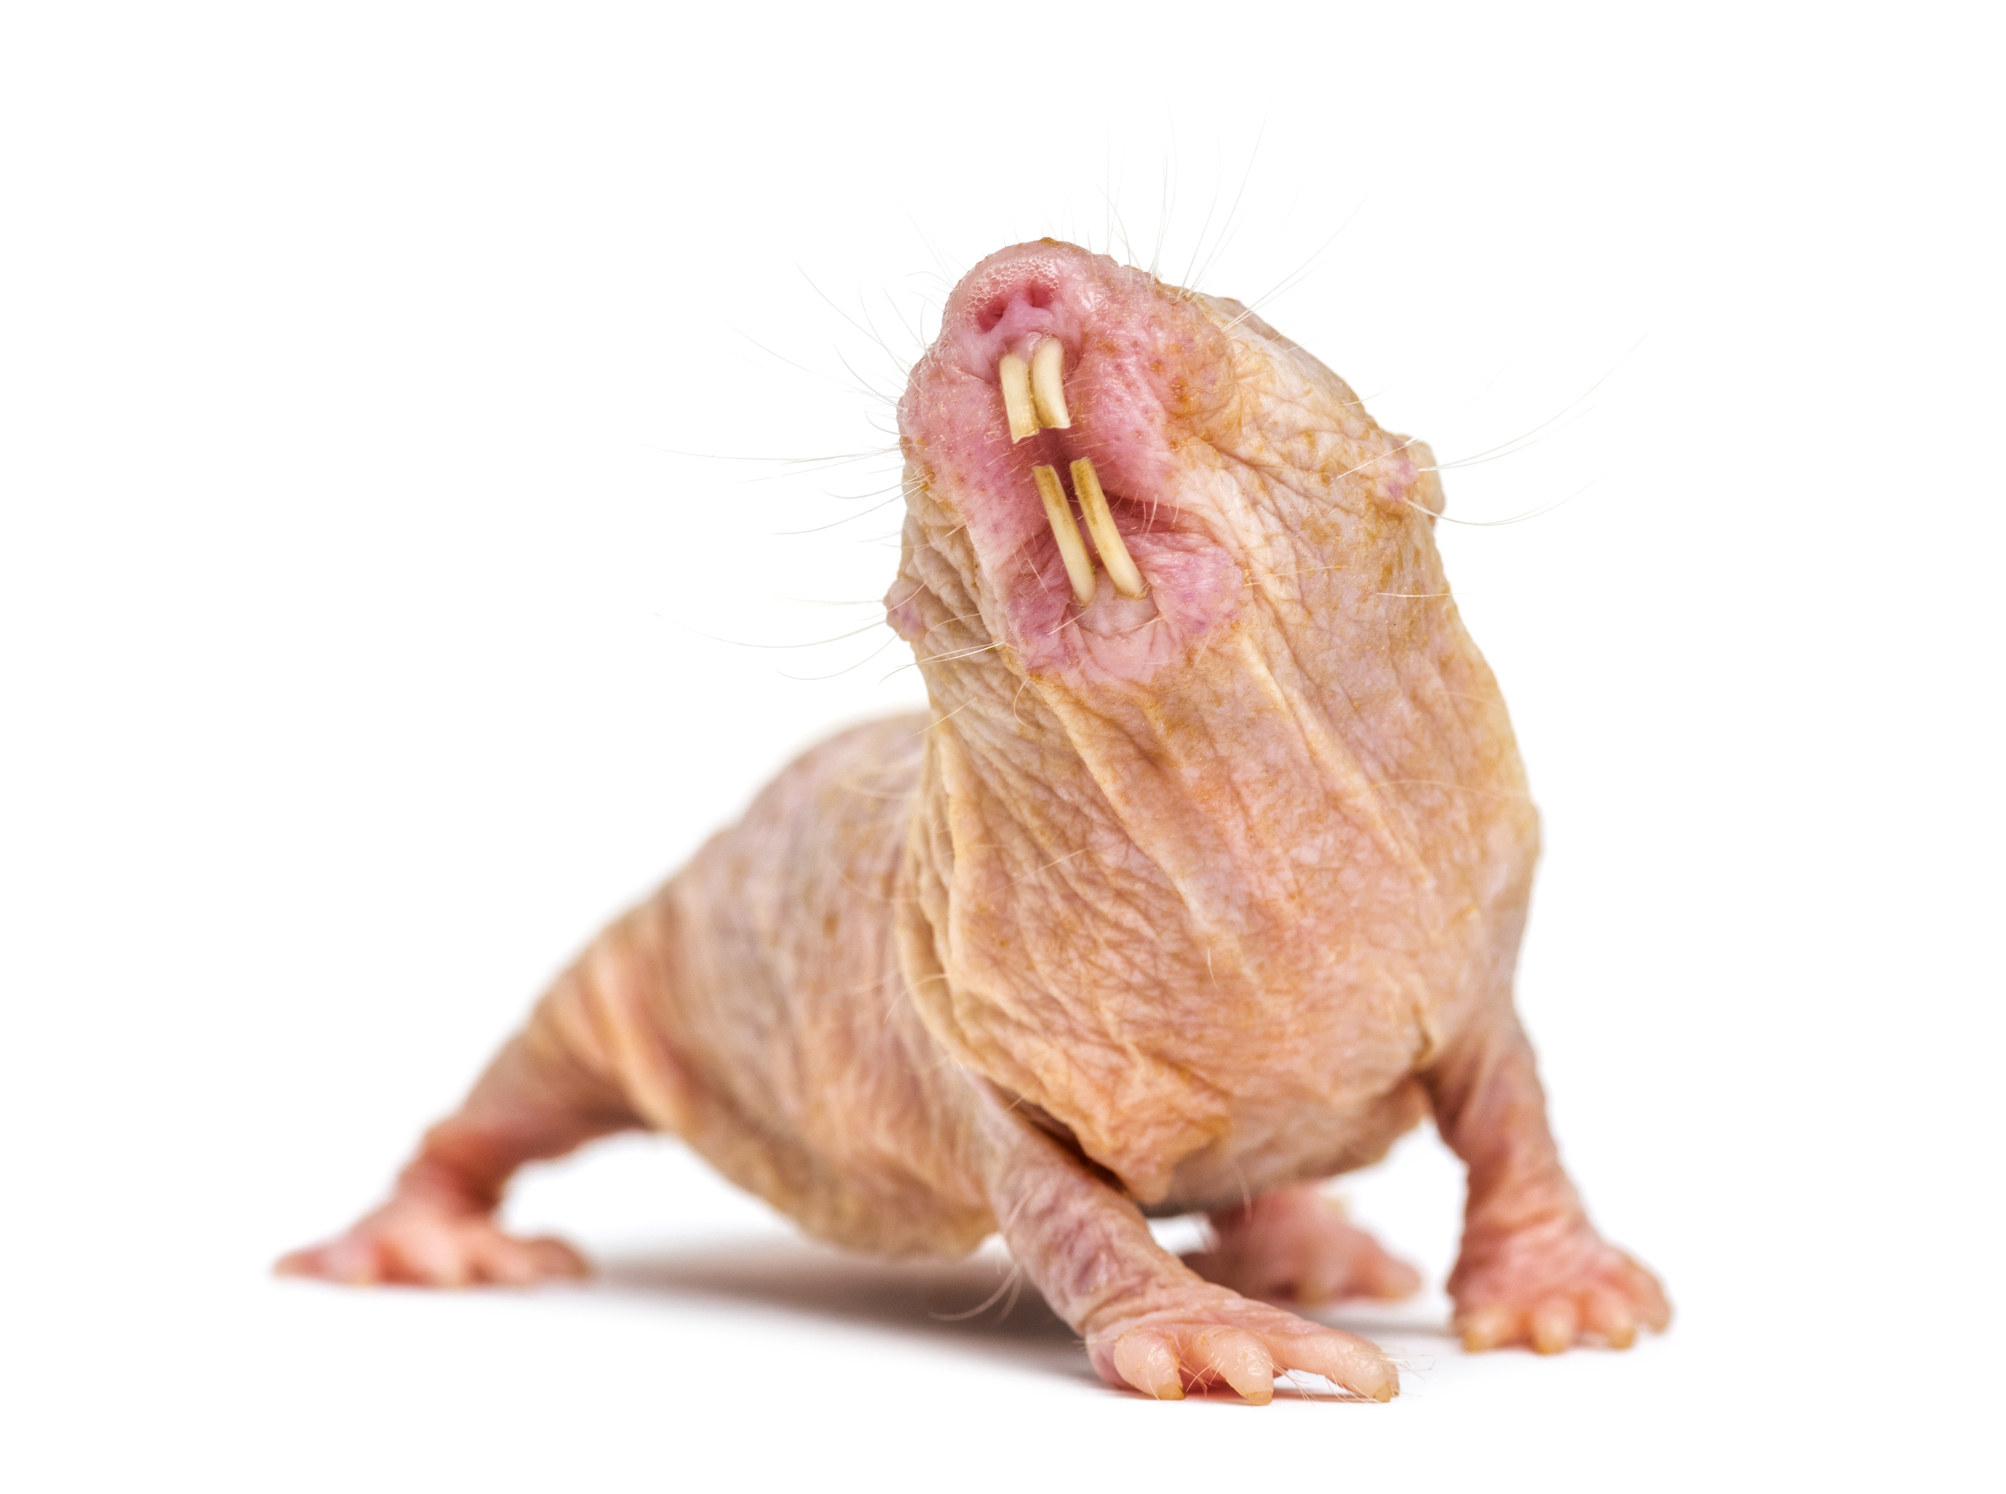 A naked mole rat